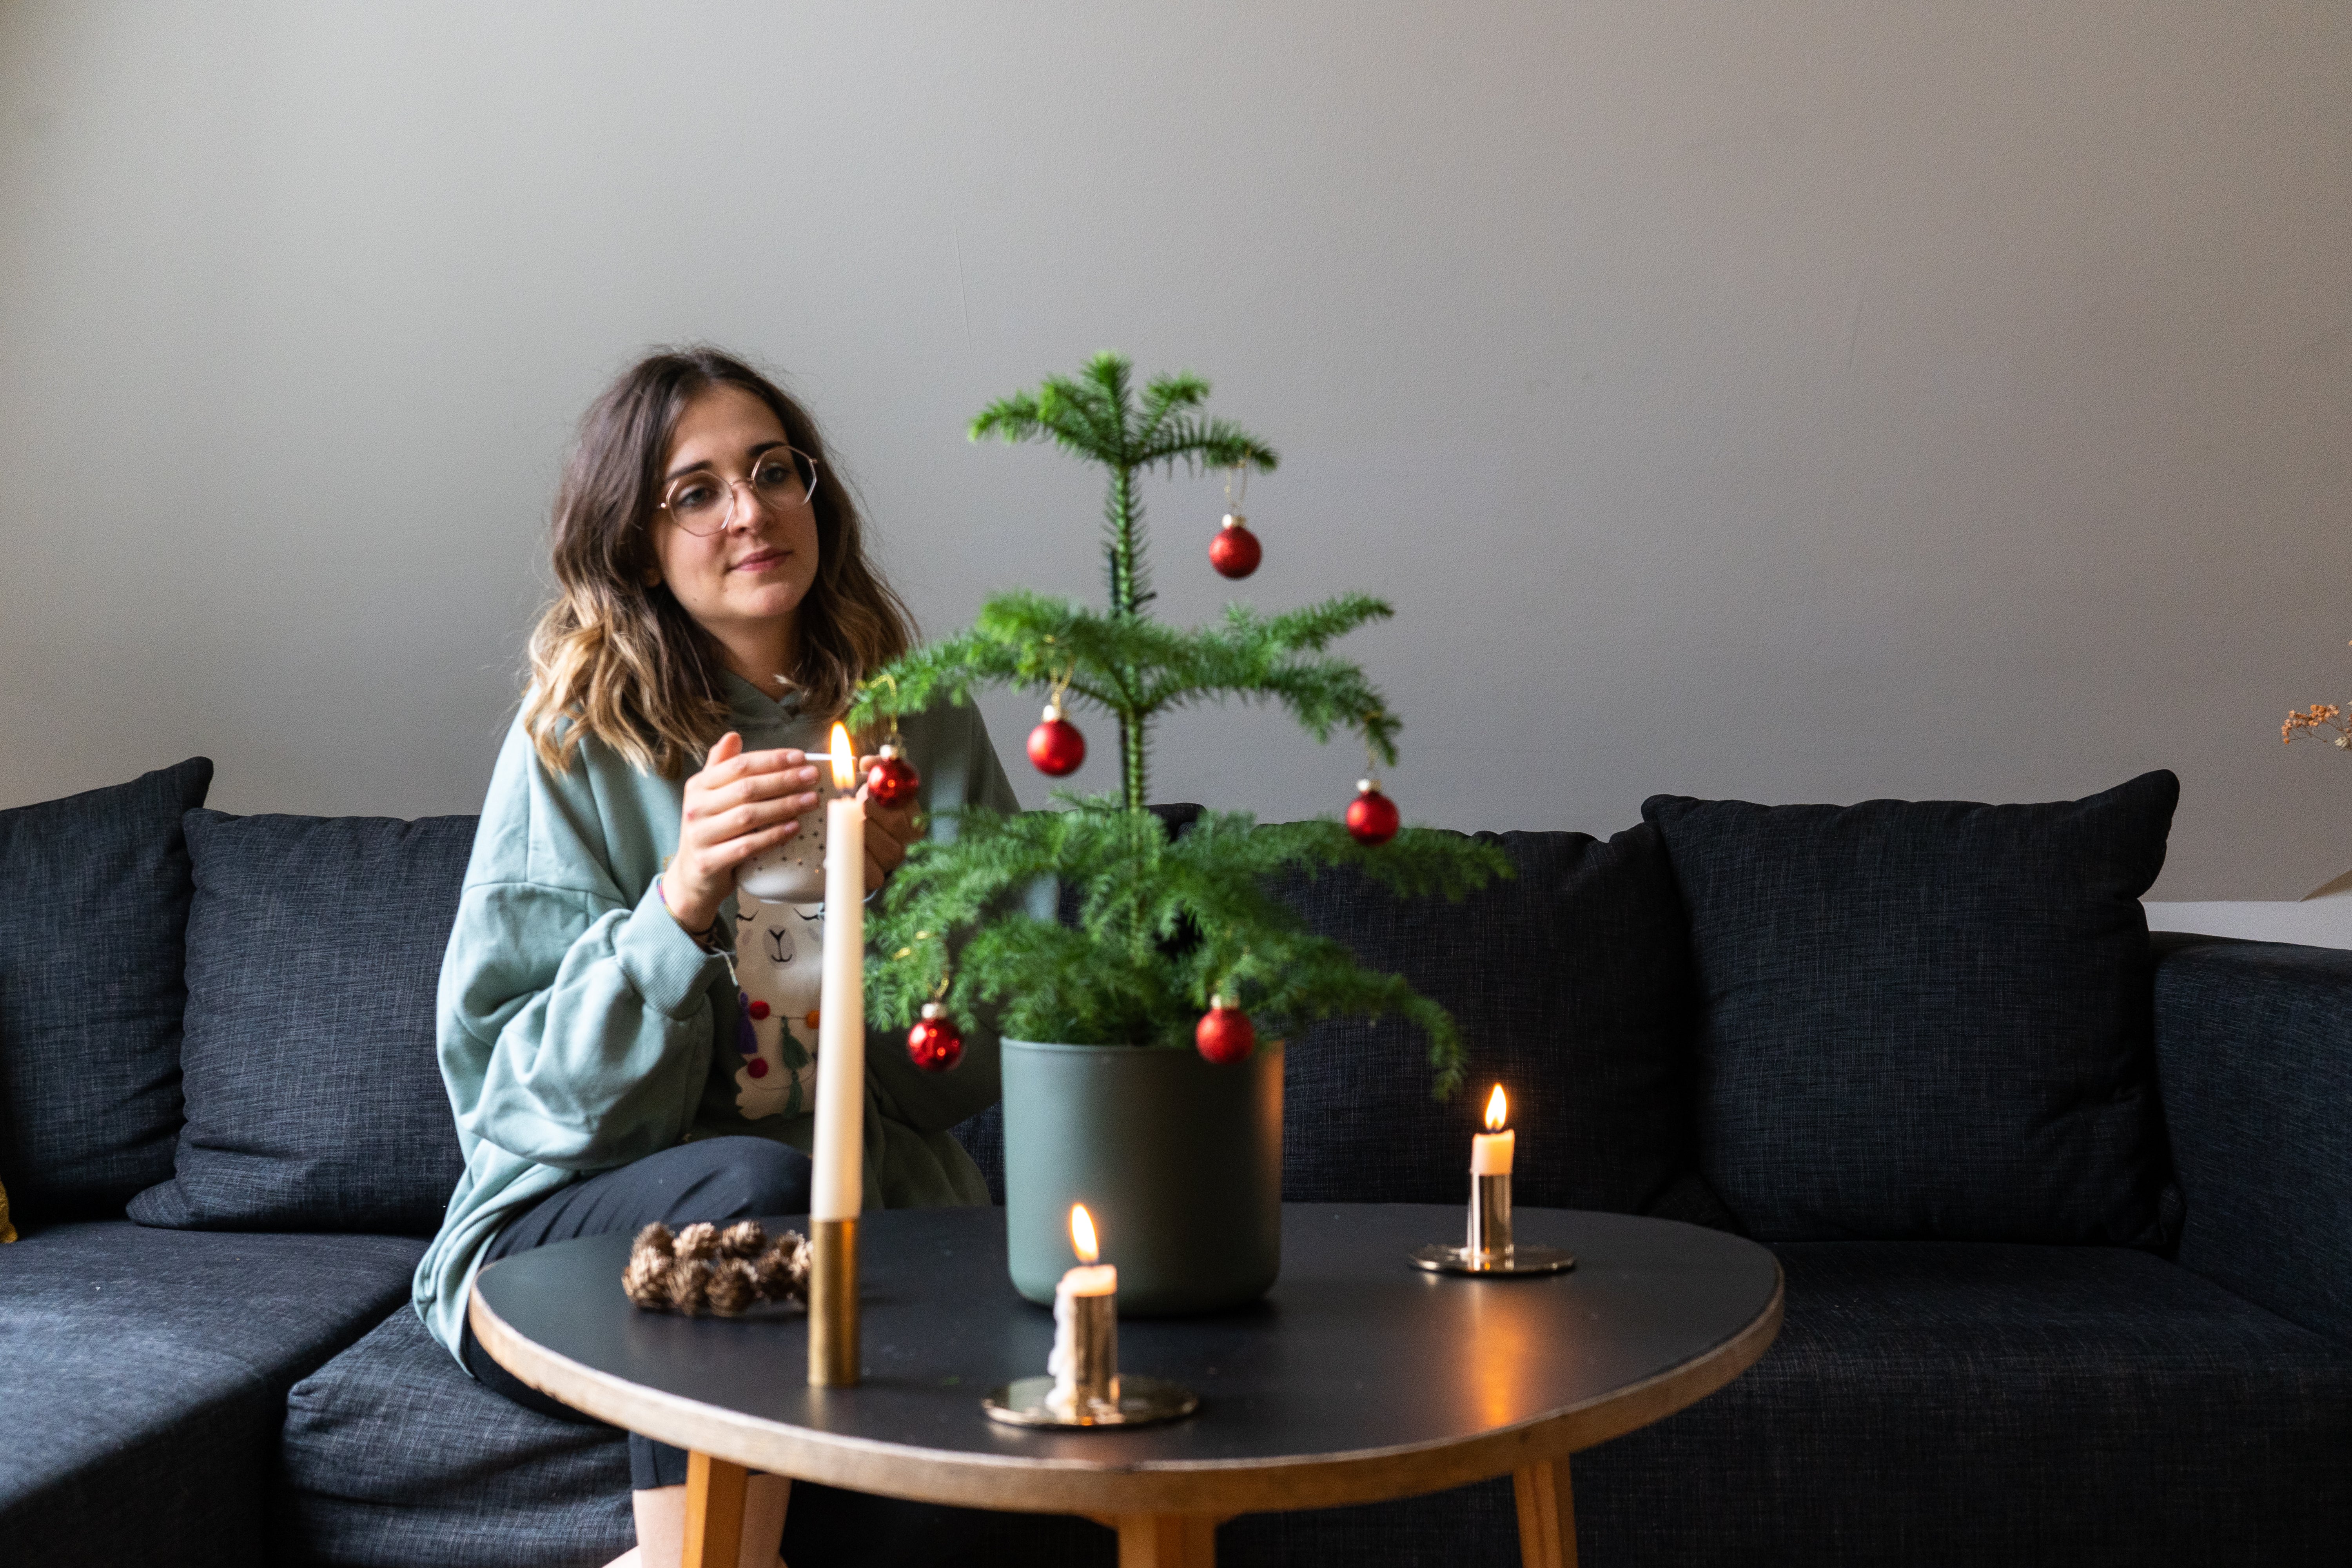 Frau mit braunen Haaren sitzt mit einer Tasse in der Hand auf einem Sofa, davor stehen ein geschmücktes Weihnachtsbäumchen und Kerzen